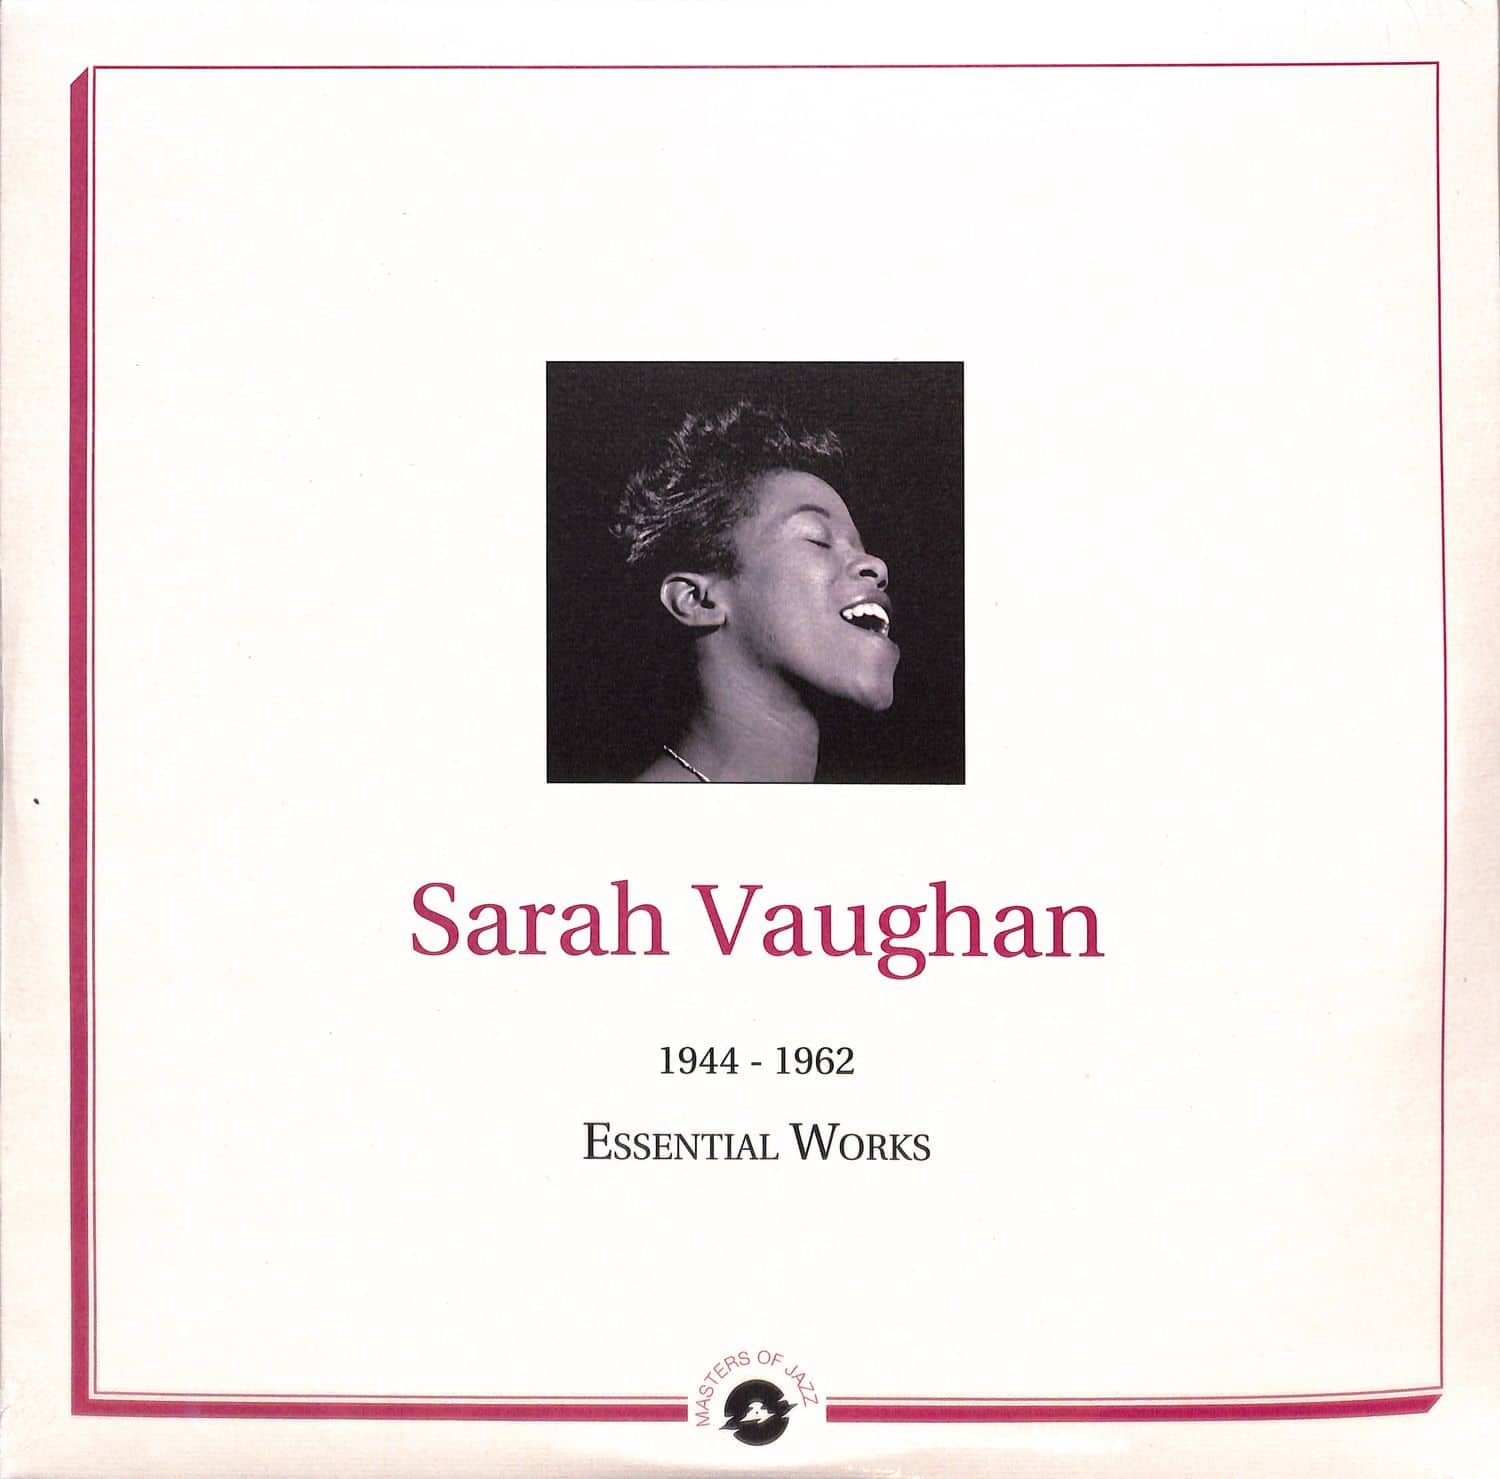 Sarah Vaughan - ESSENTIAL WORKS: 1944-1962 